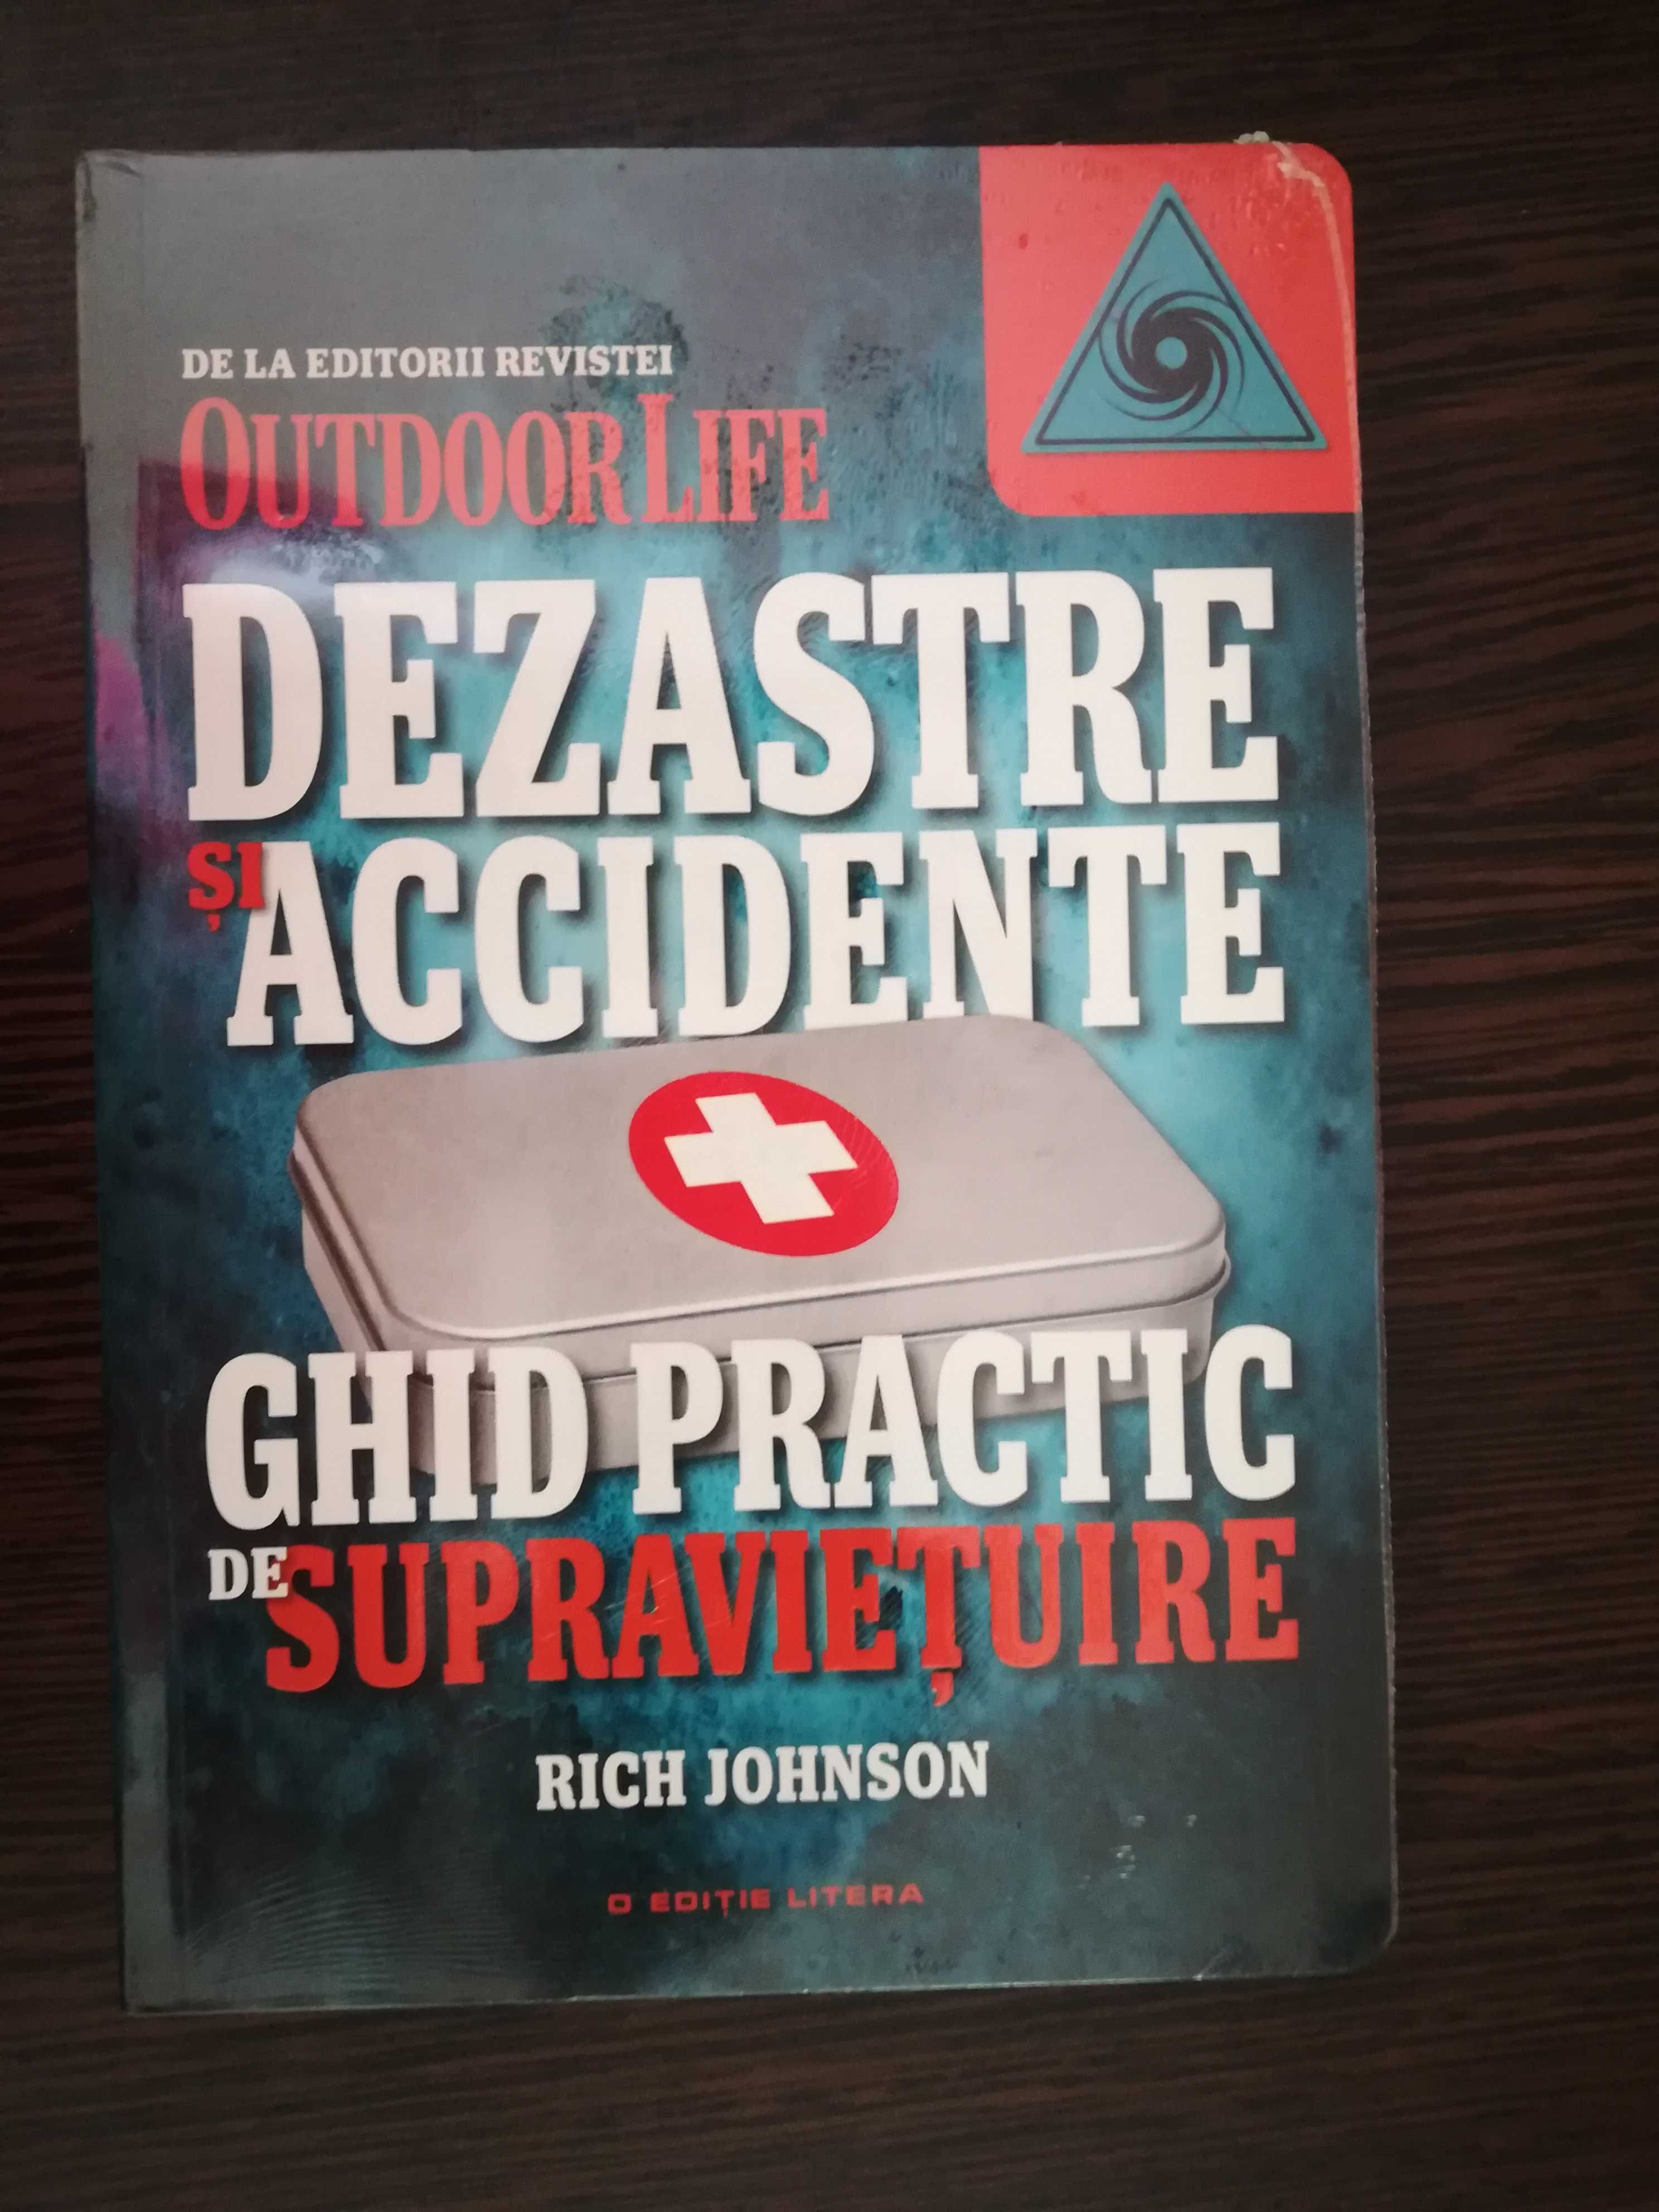 Rich Johnson - Ghid practic de supravietuire